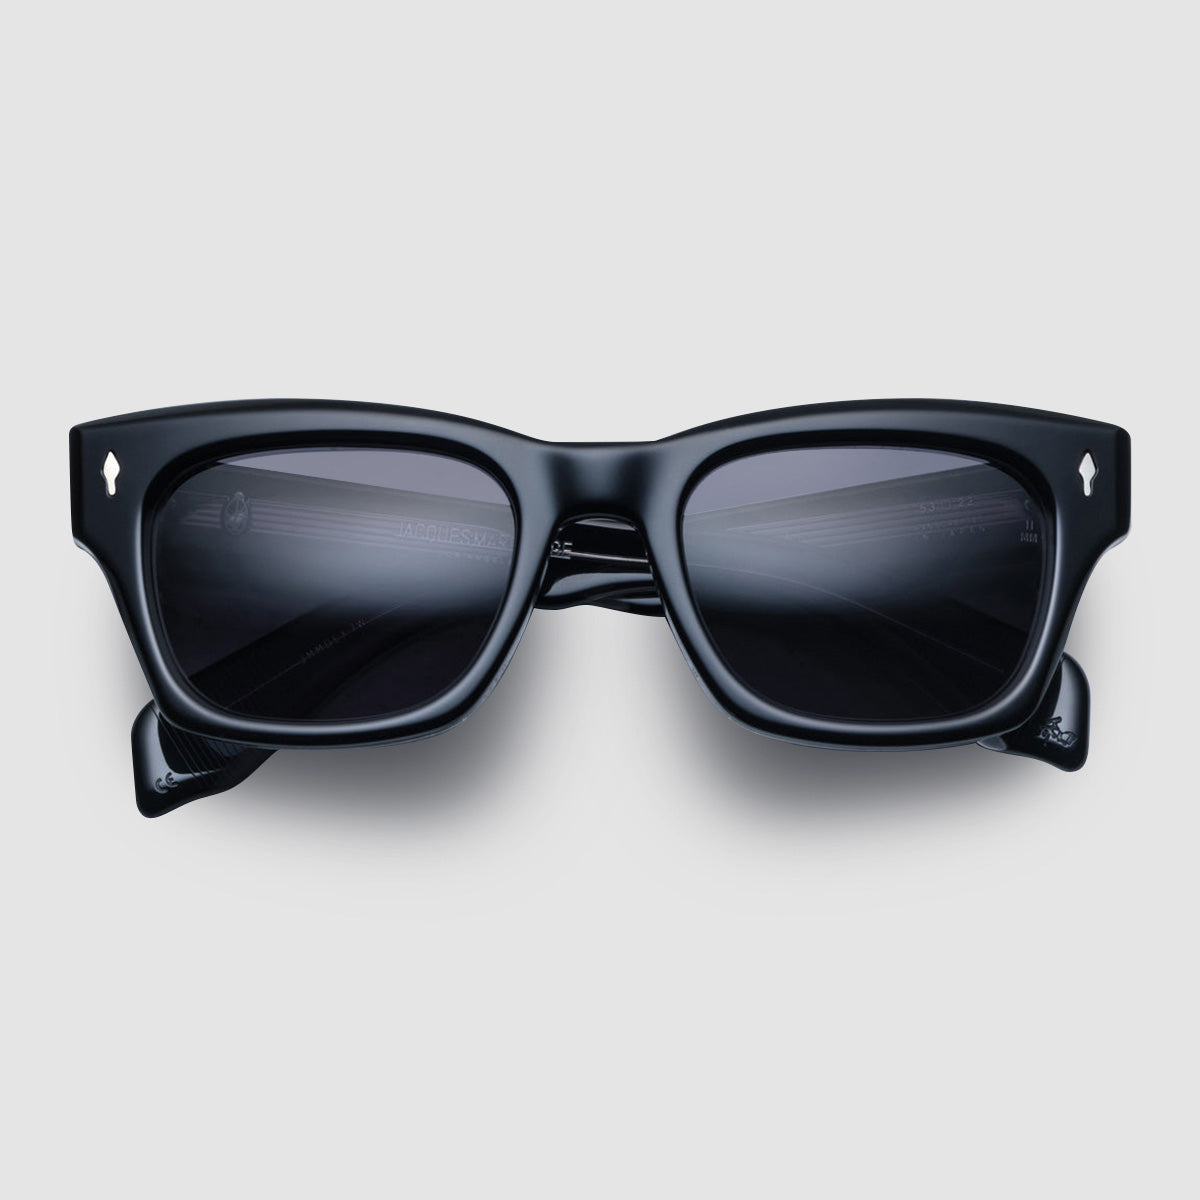 Jacques Marie Mage Savoy - Black Matte, Sunglasses